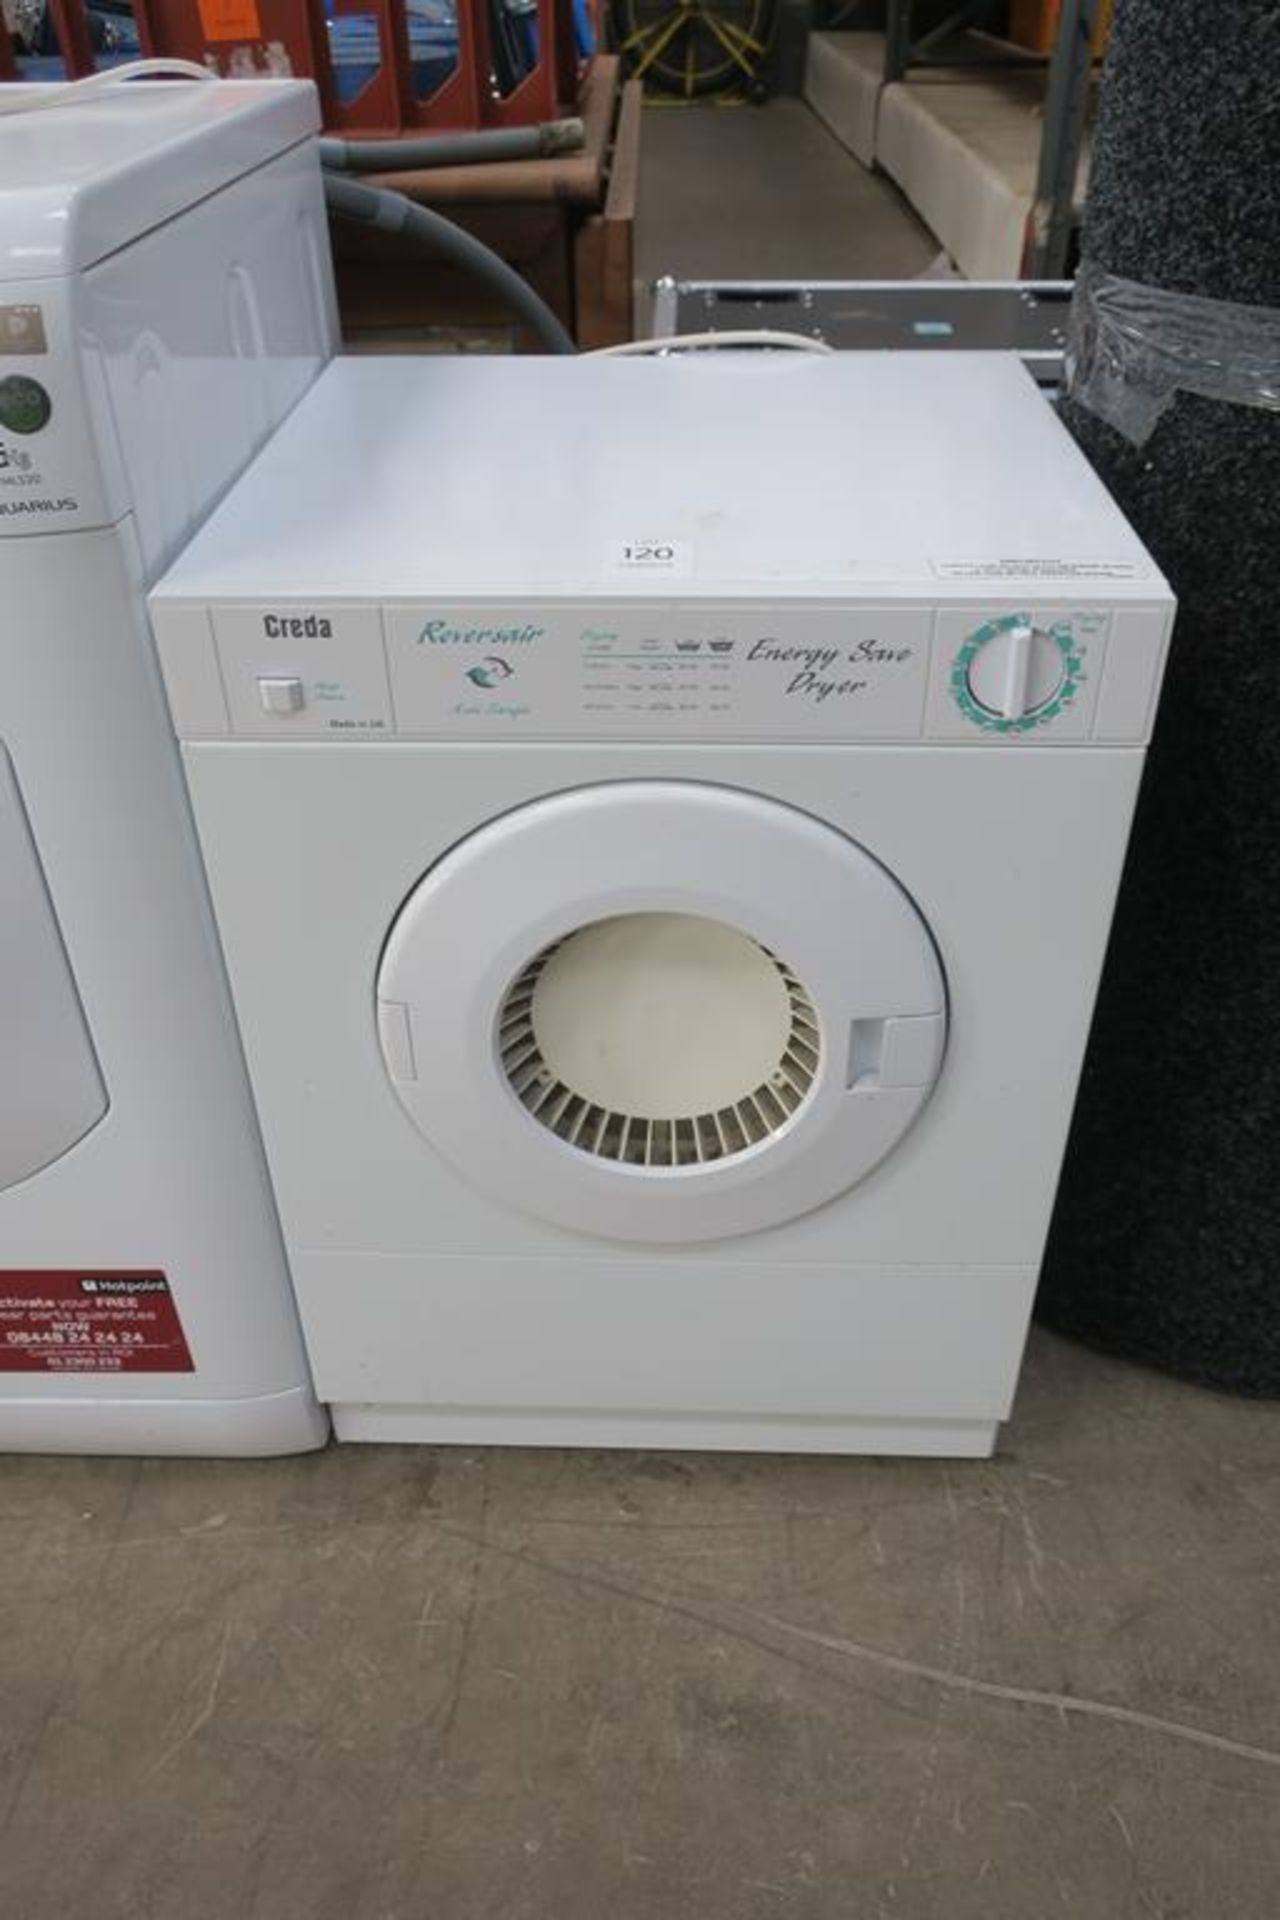 A Creda Reversair 240V Dryer